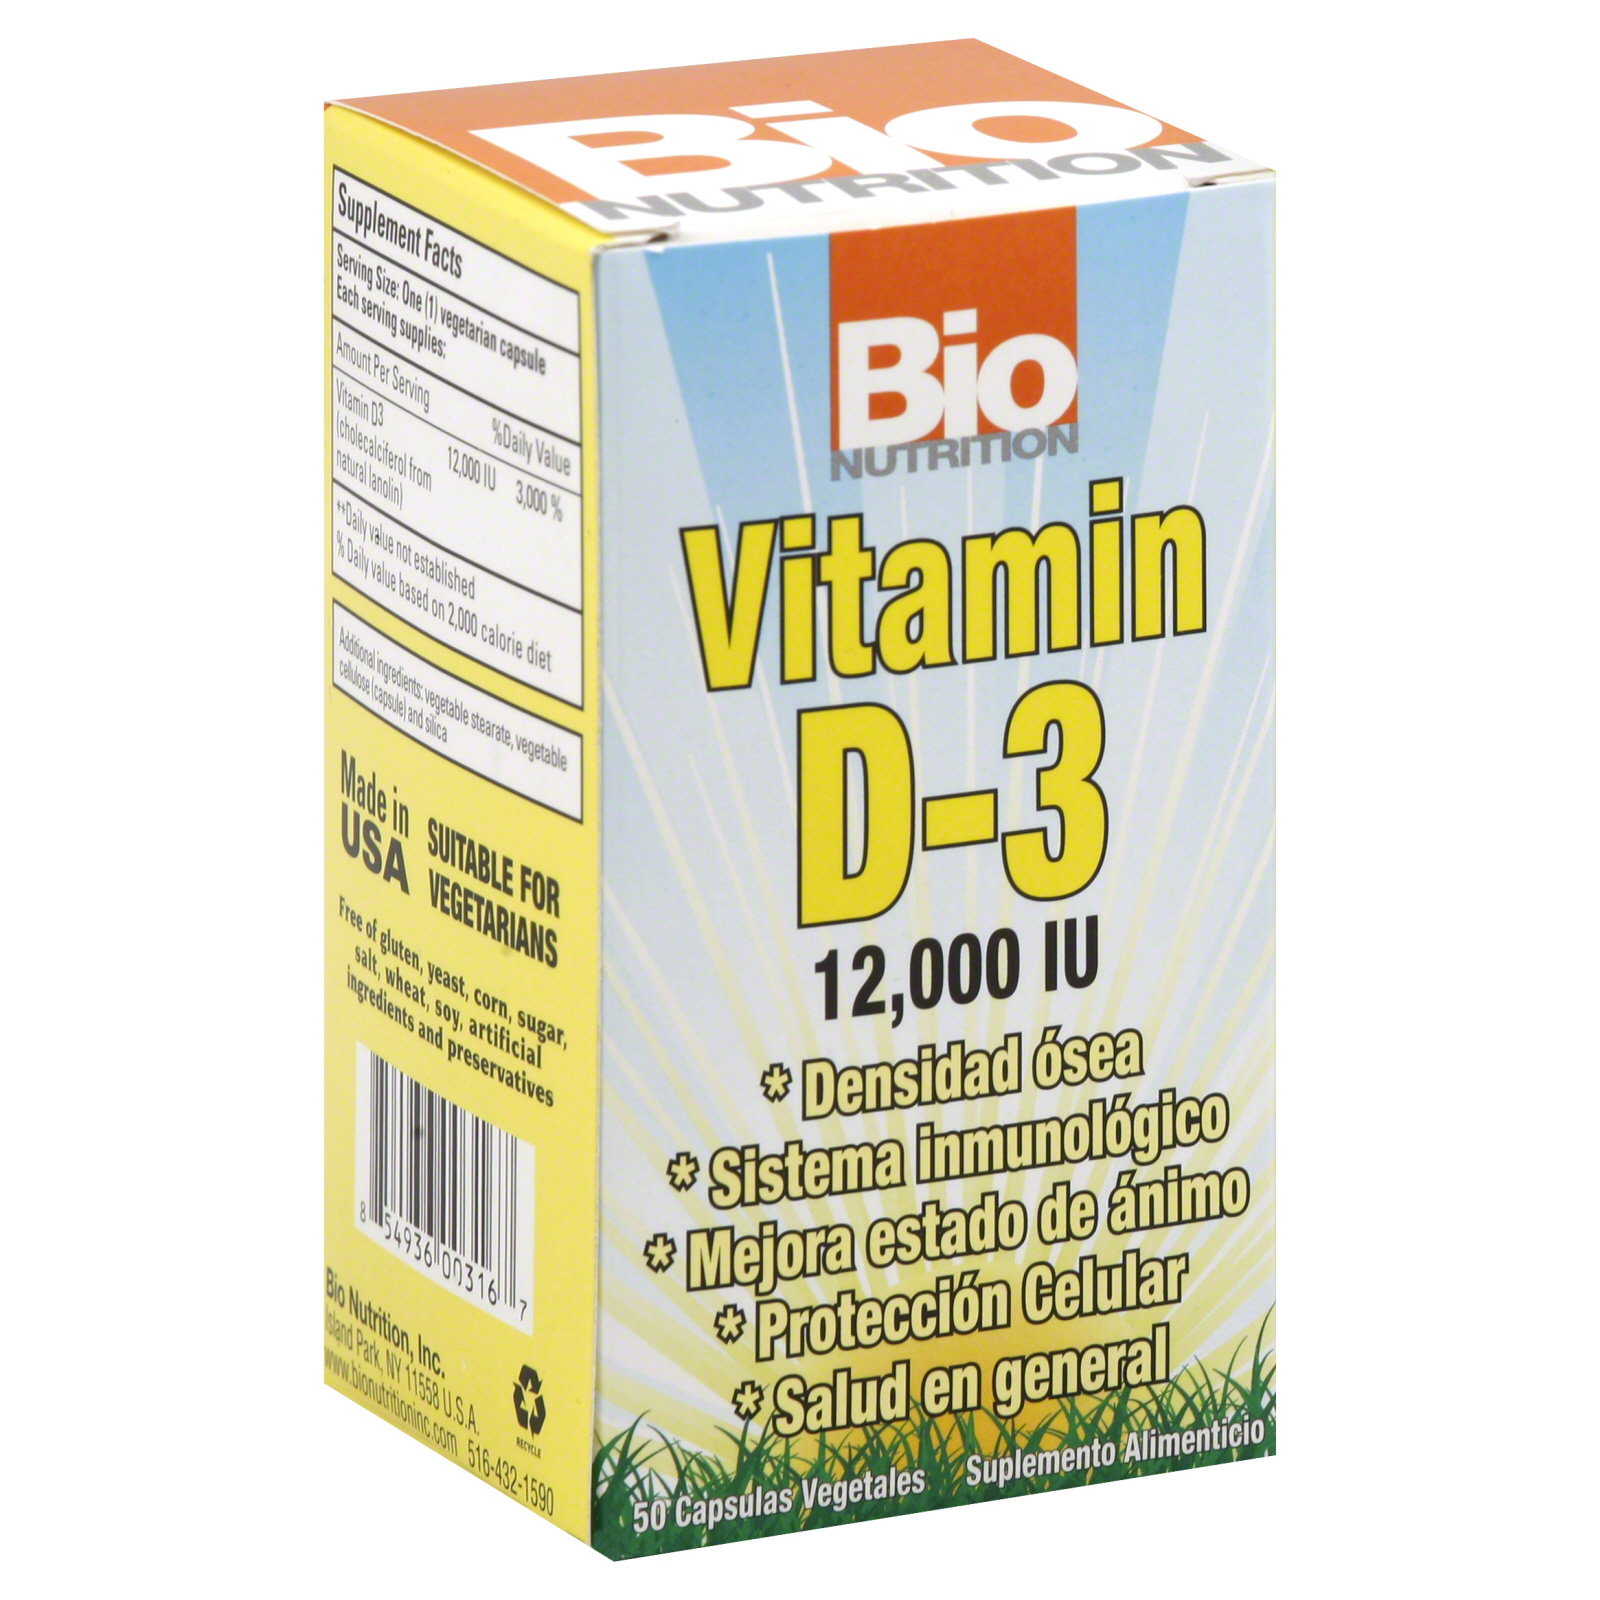 Vitamin D-3, 12000 IU, Vegetarian Capsules, 50 capsules